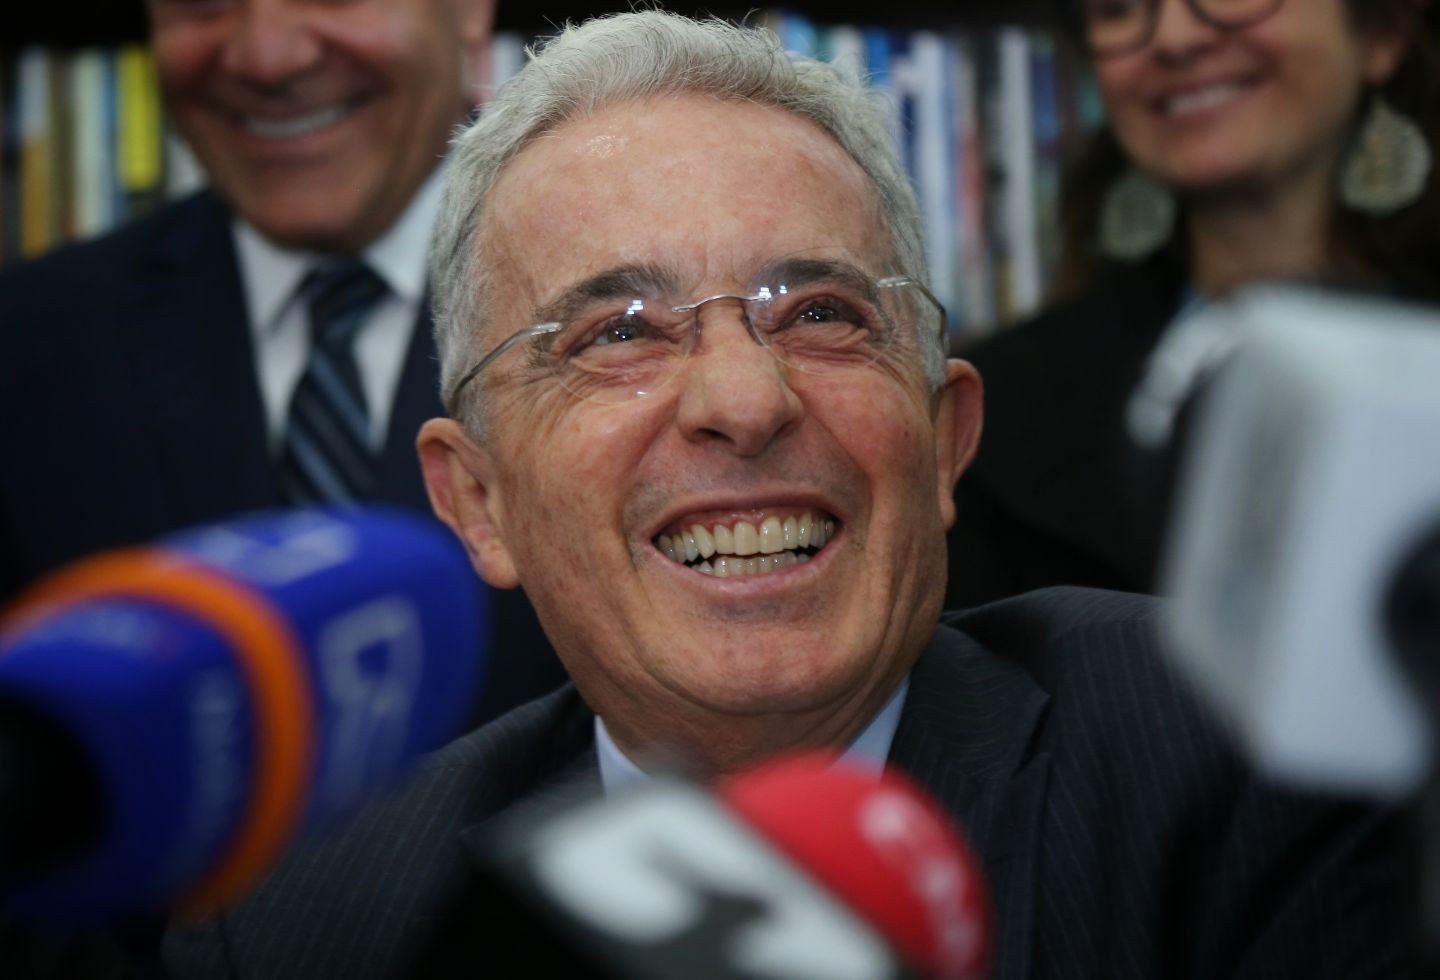  Ordenan liberación inmediata de Álvaro Uribe tras arresto domiciliario